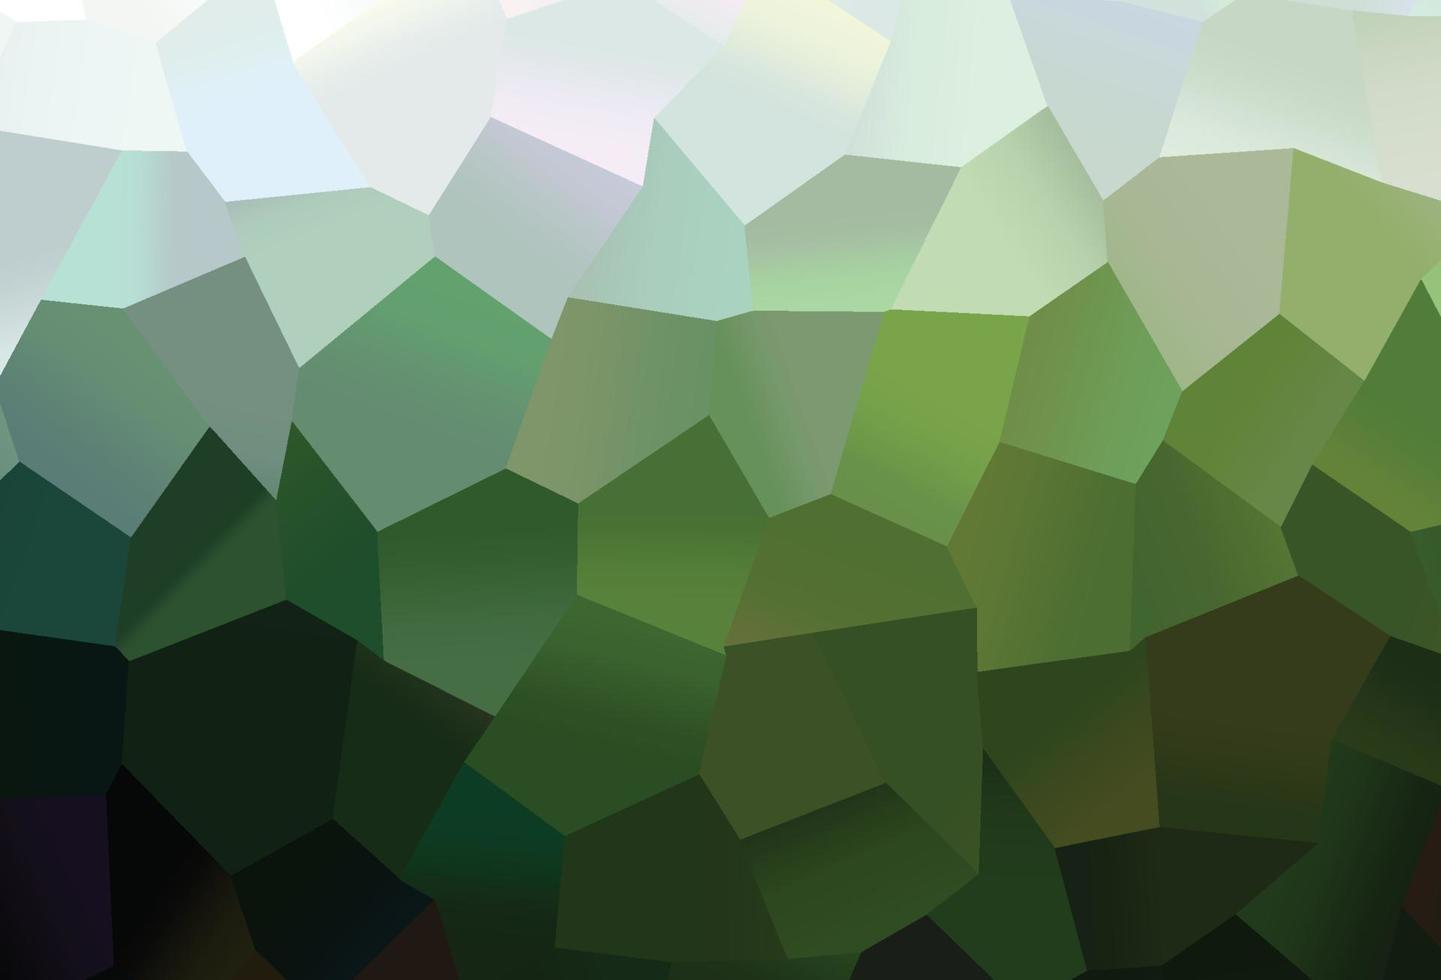 couverture de vecteur vert foncé avec ensemble d'hexagones.